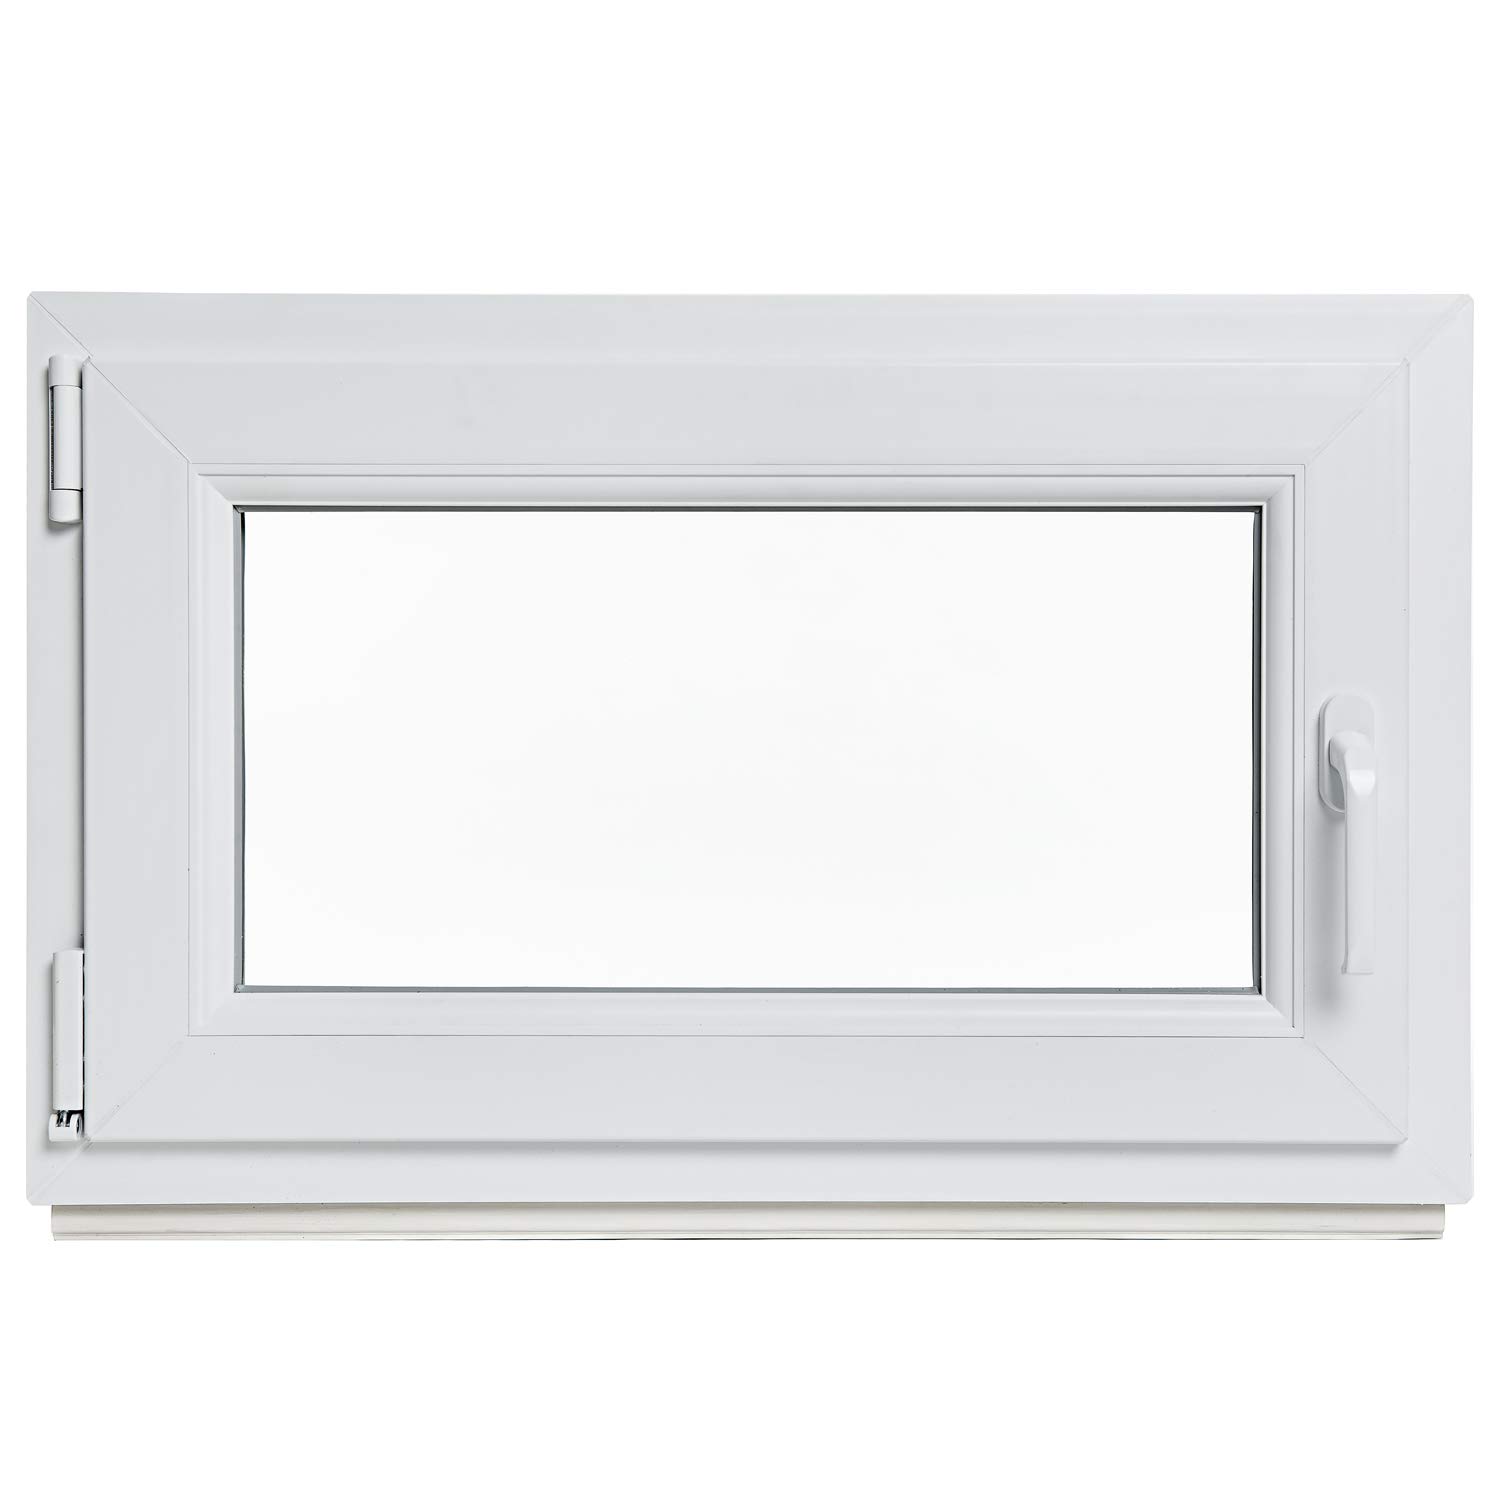 Kellerfenster - Kunststoff - Fenster - weiß - BxH: 50 x 50 cm - DIN links - 2-fach-Verglasung - Lagerware